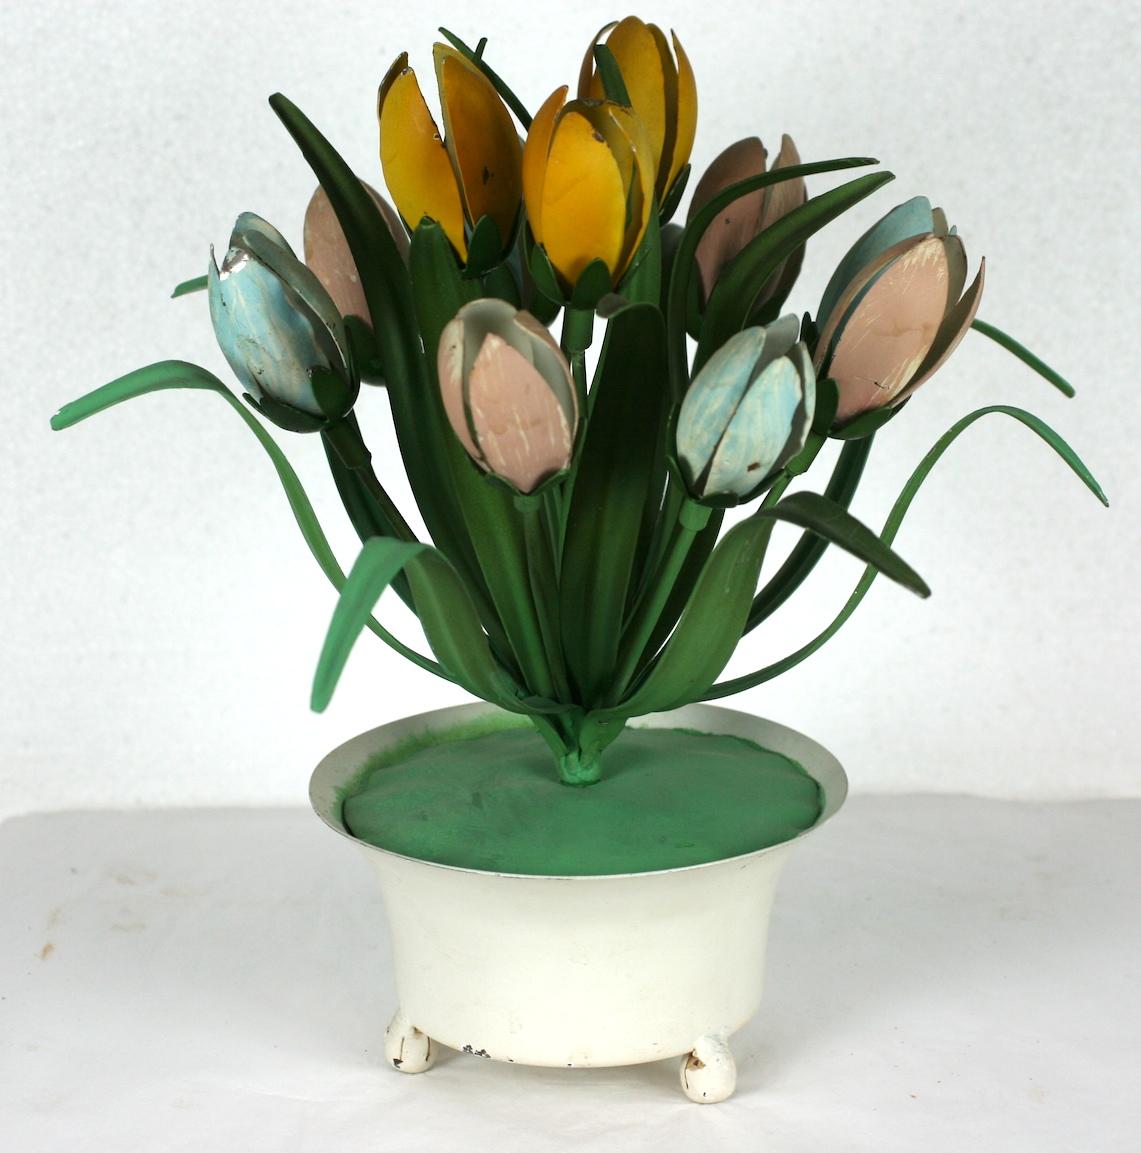 Décoration de table italienne en forme de tulipe en pot, peinte à froid. Un pot à pied blanc contient une grappe symétrique de tulipes fermées en métal de couleur rose, bleue et jaune. Les feuilles sont d'une finition mate d'un riche vert